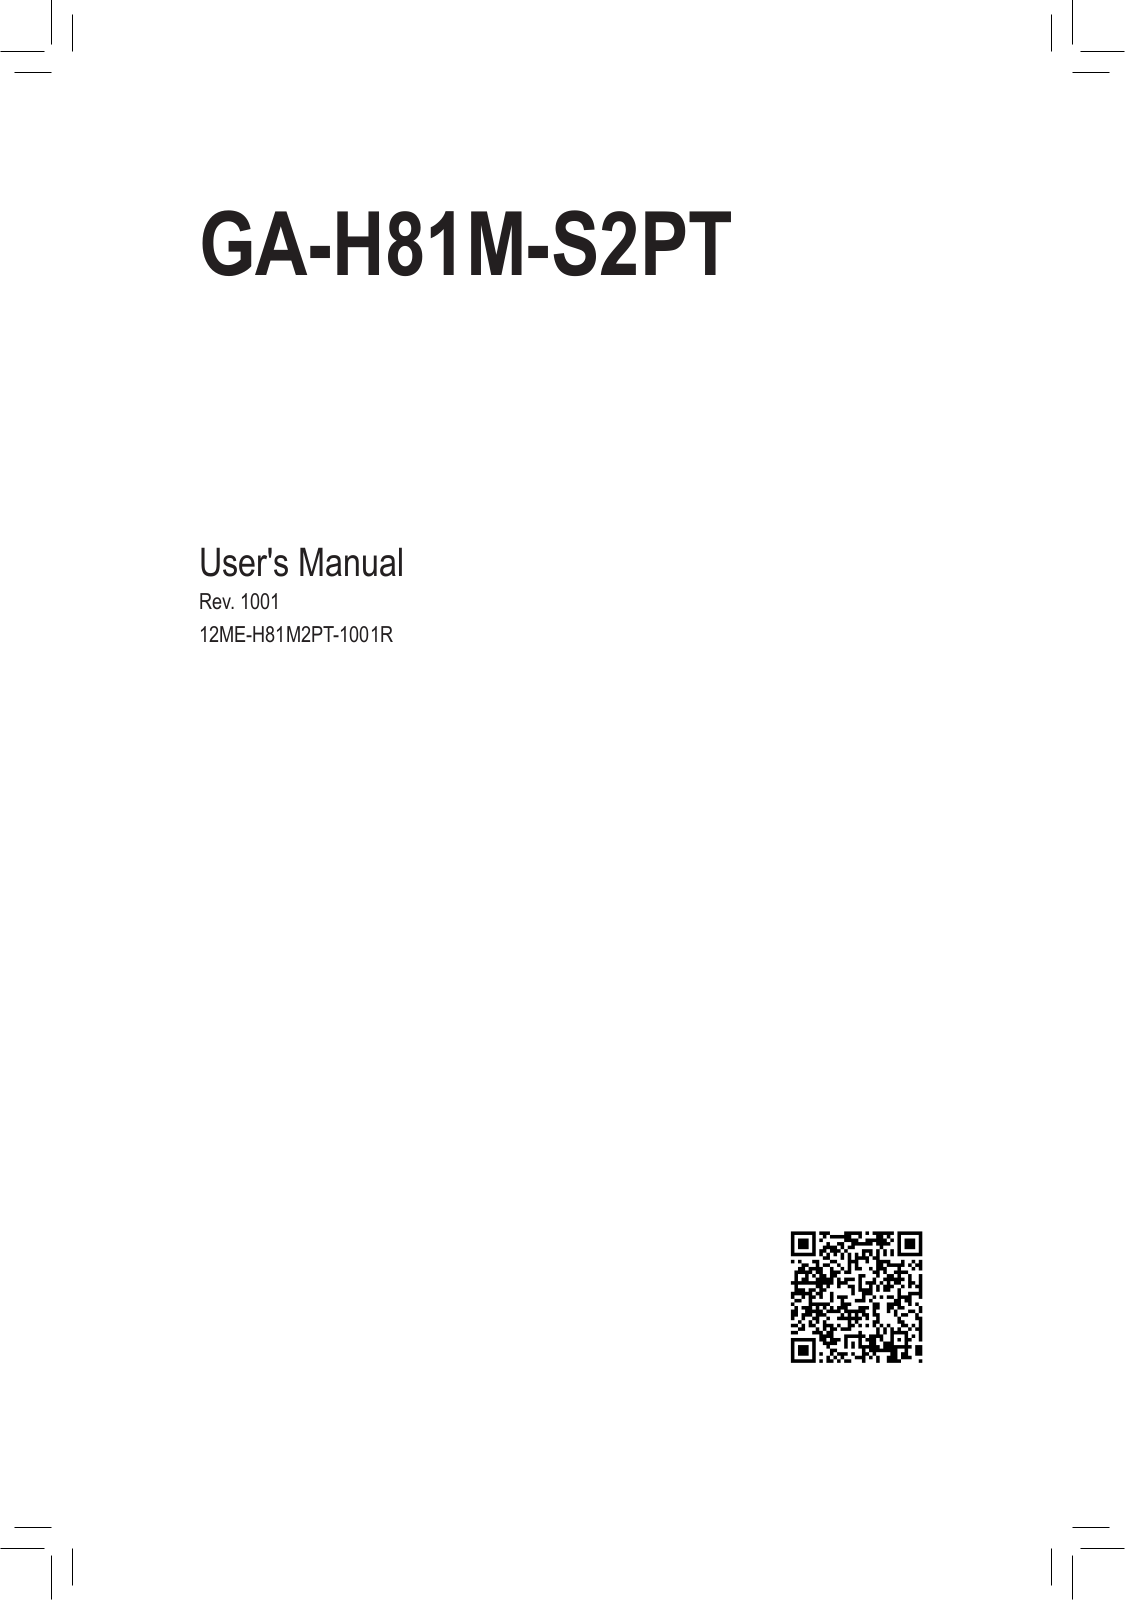 Gigabyte GA-H81M-S2PT User Manual